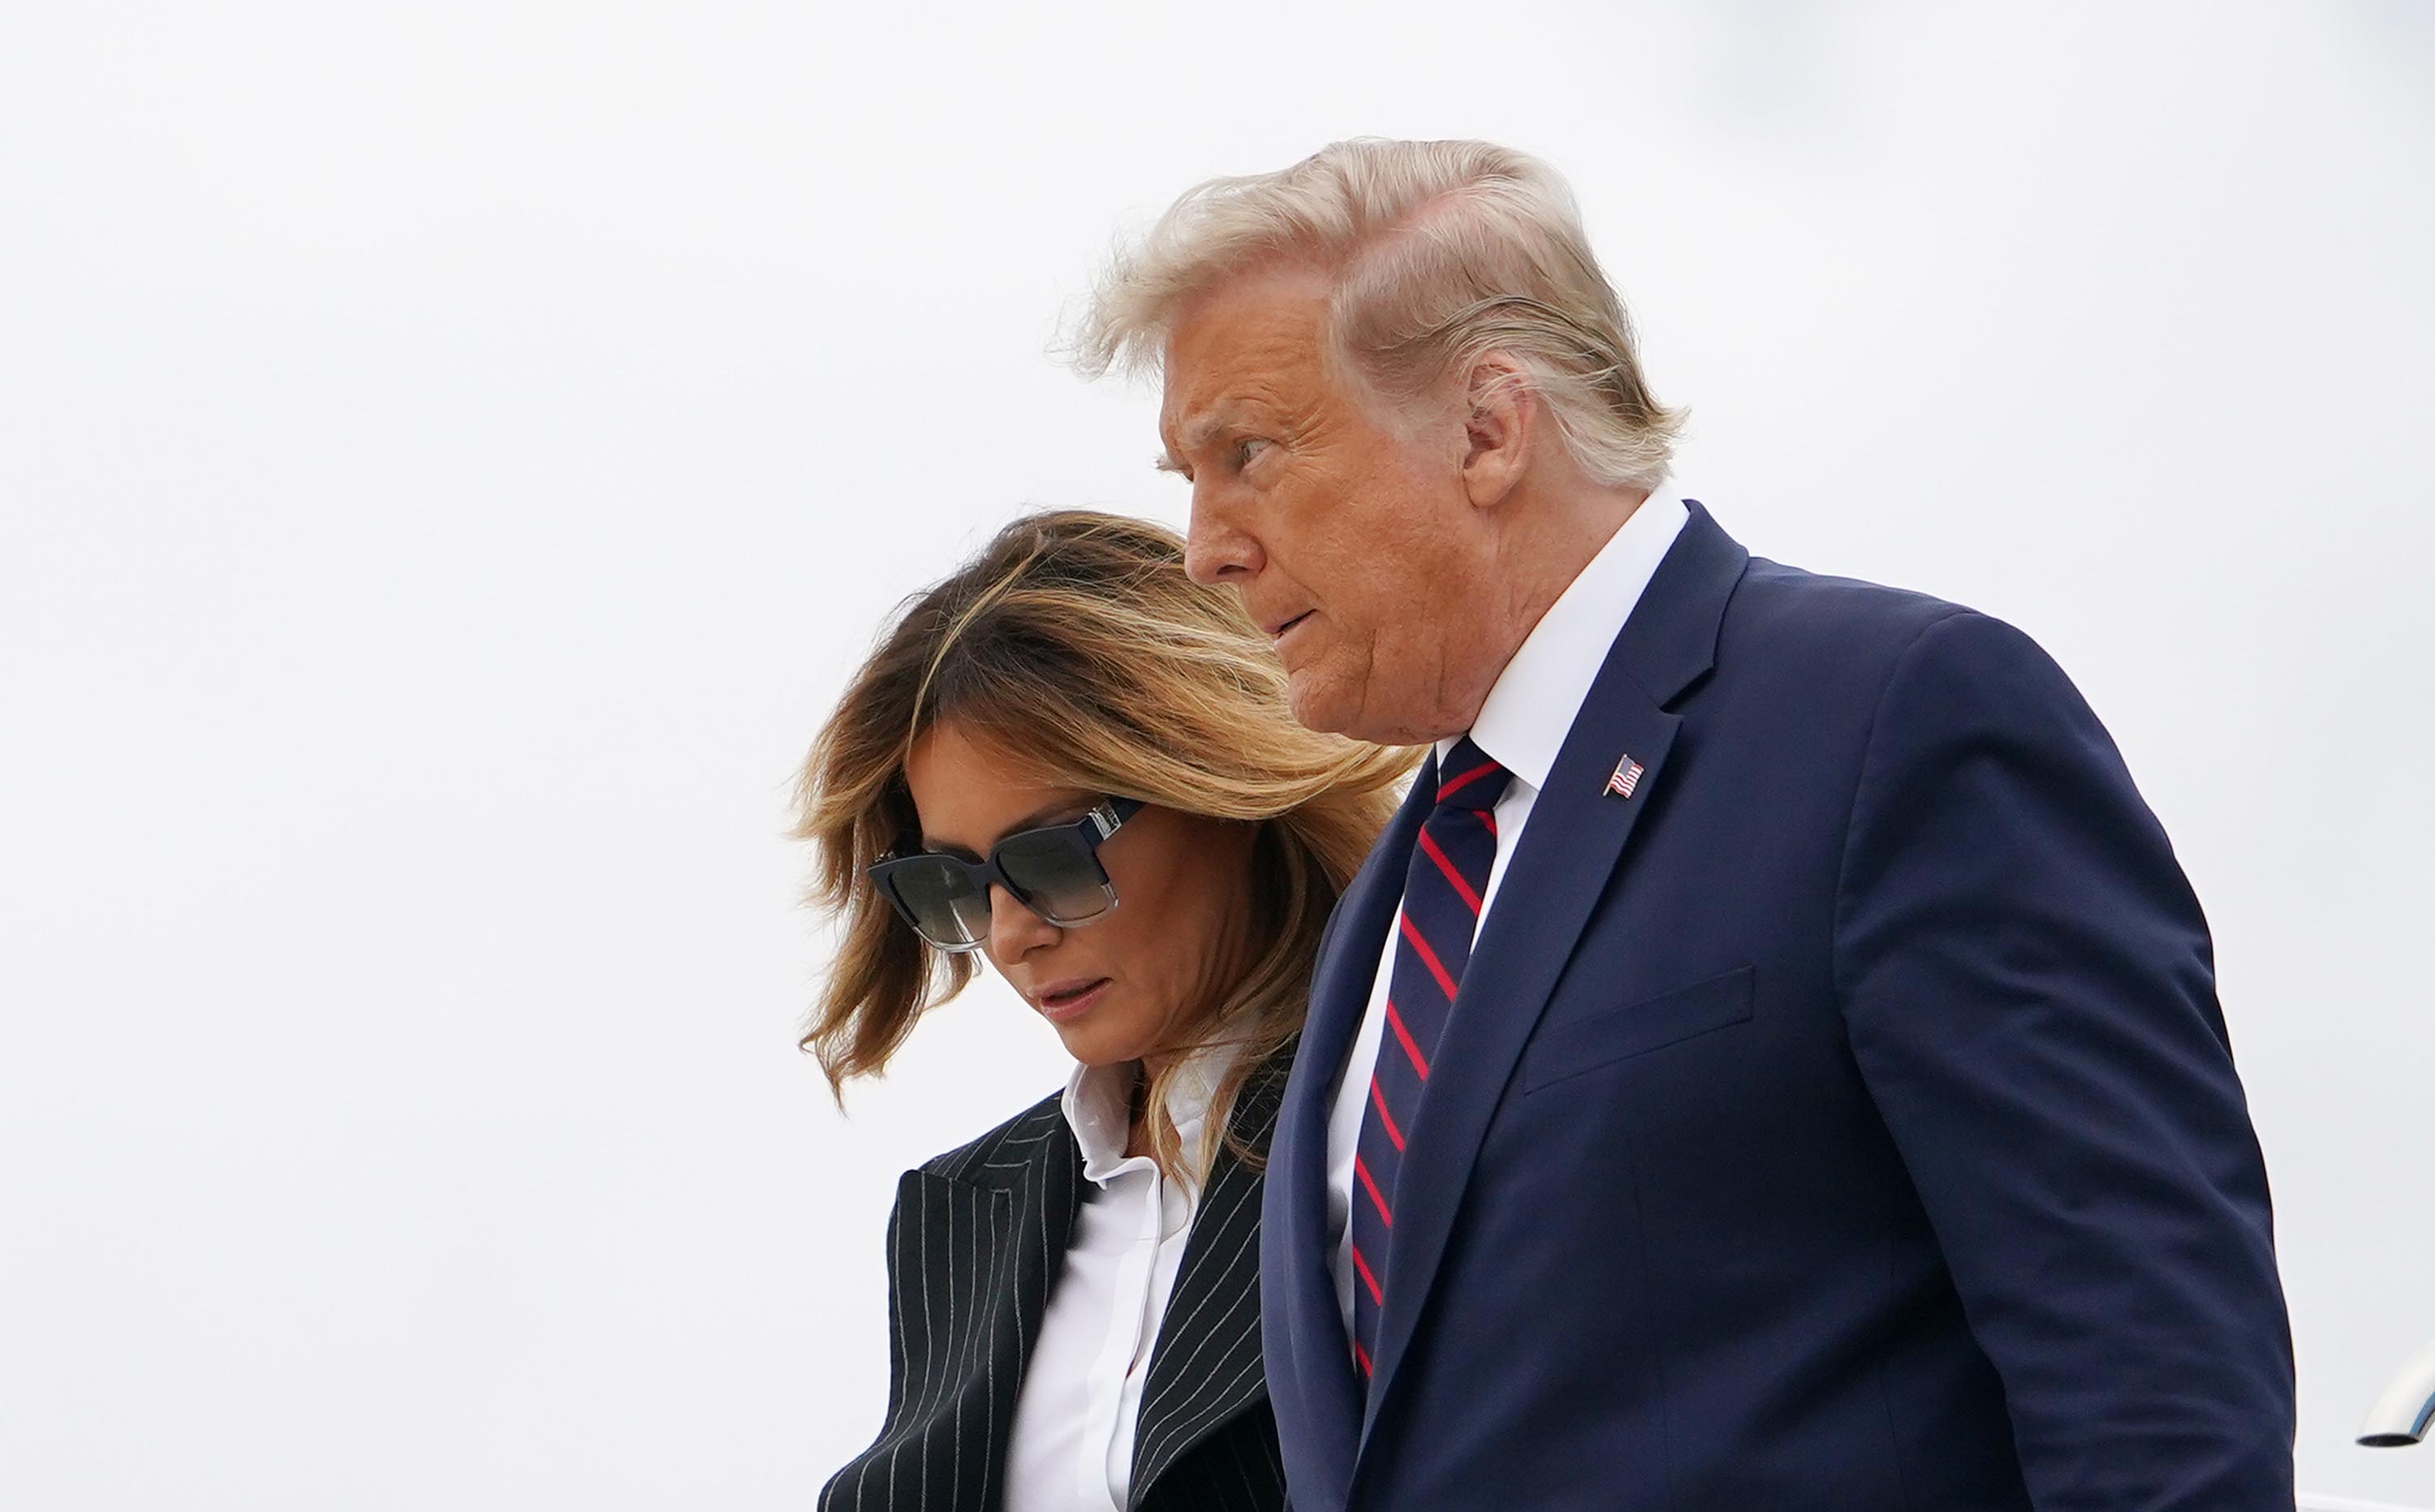 Tổng thống Donald Trump và phu nhân Melania rời chuyên cơ Không lực 1 khi đến Cleveland, bang Ohio, tham gia cuộc tranh luận trực tiếp với đối thủ Joe Biden ngày 29-9.               Ảnh: AFP/Getty Images